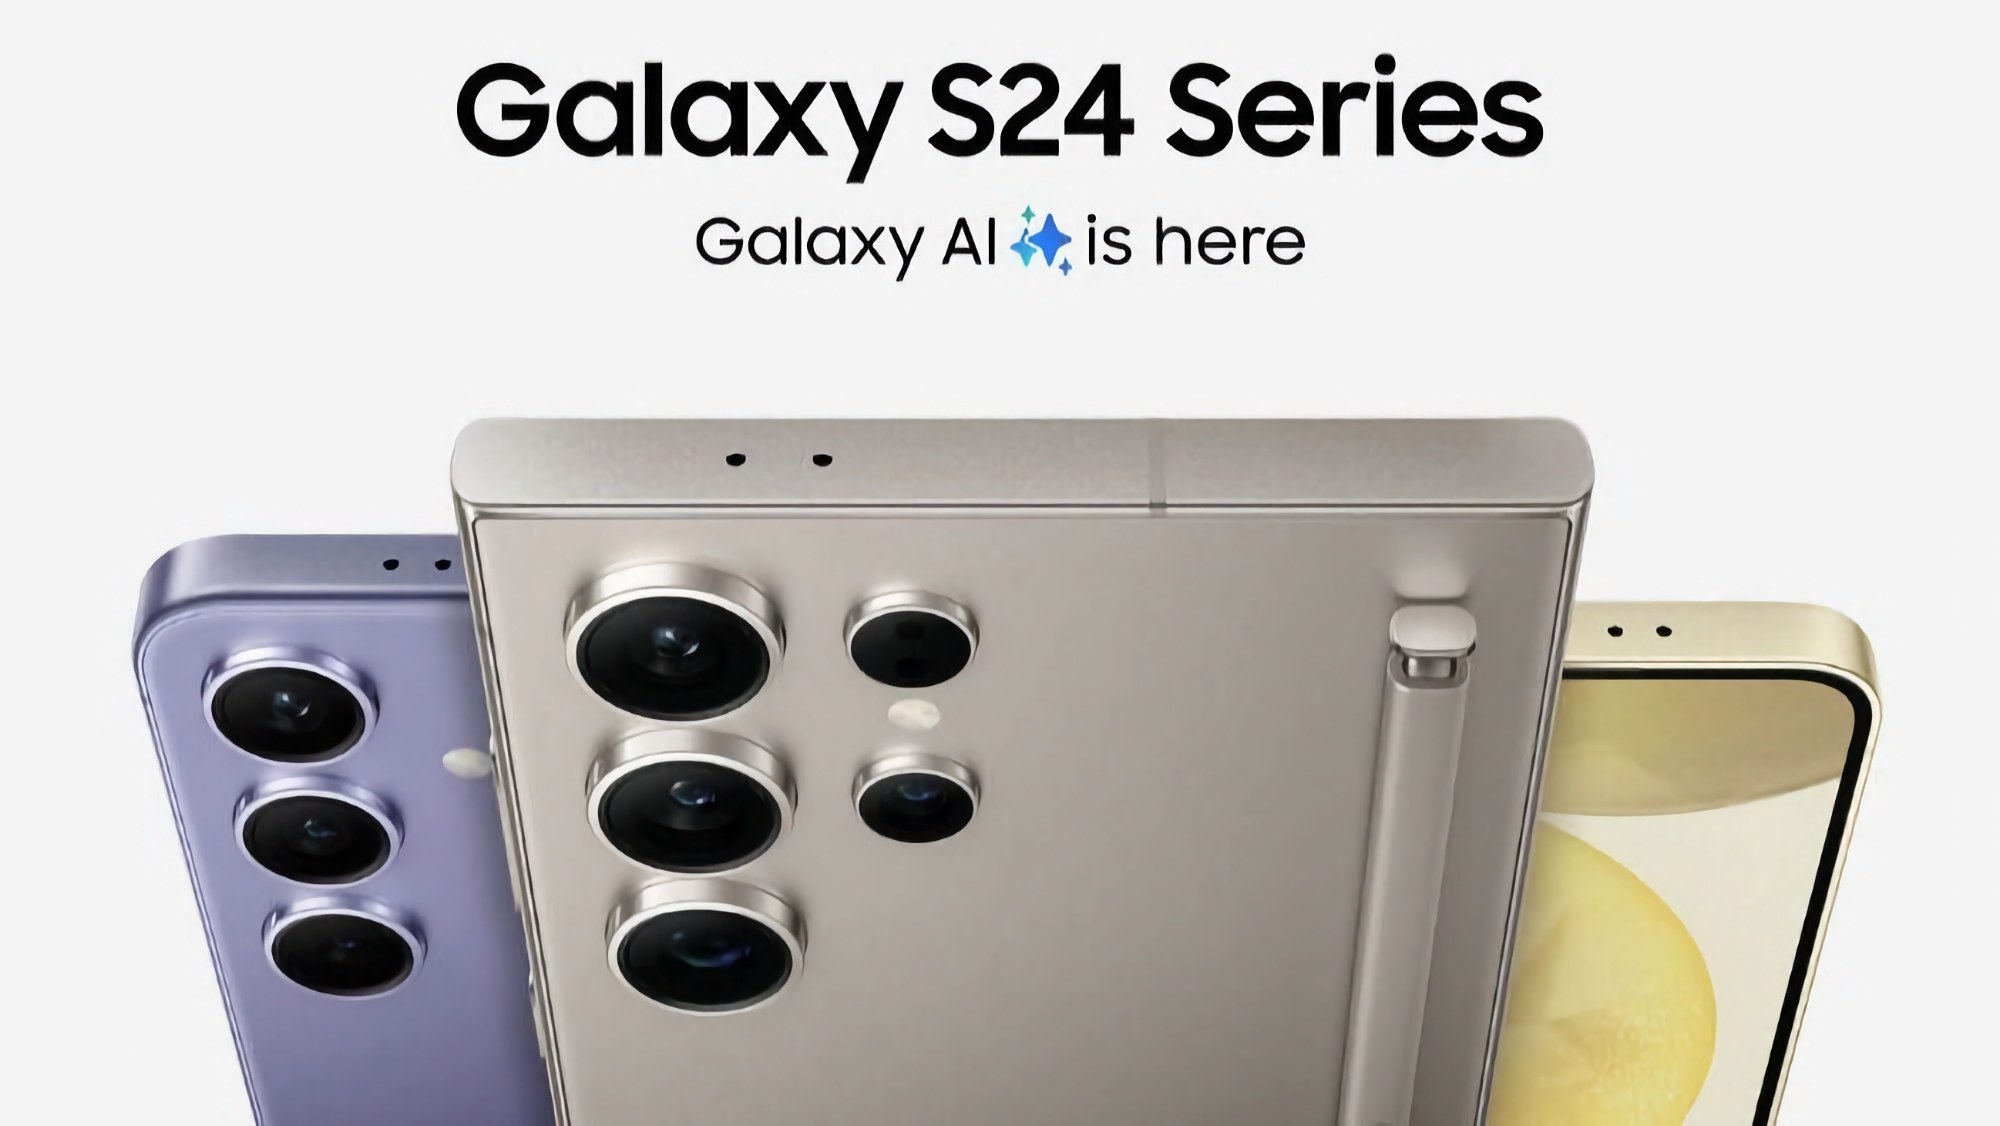 Samsung Galaxy S24, Galaxy S24+ en Galaxy S24 Ultra zijn al beschikbaar voor pre-order op Amazon, met een eGift Card met een korting tot $200